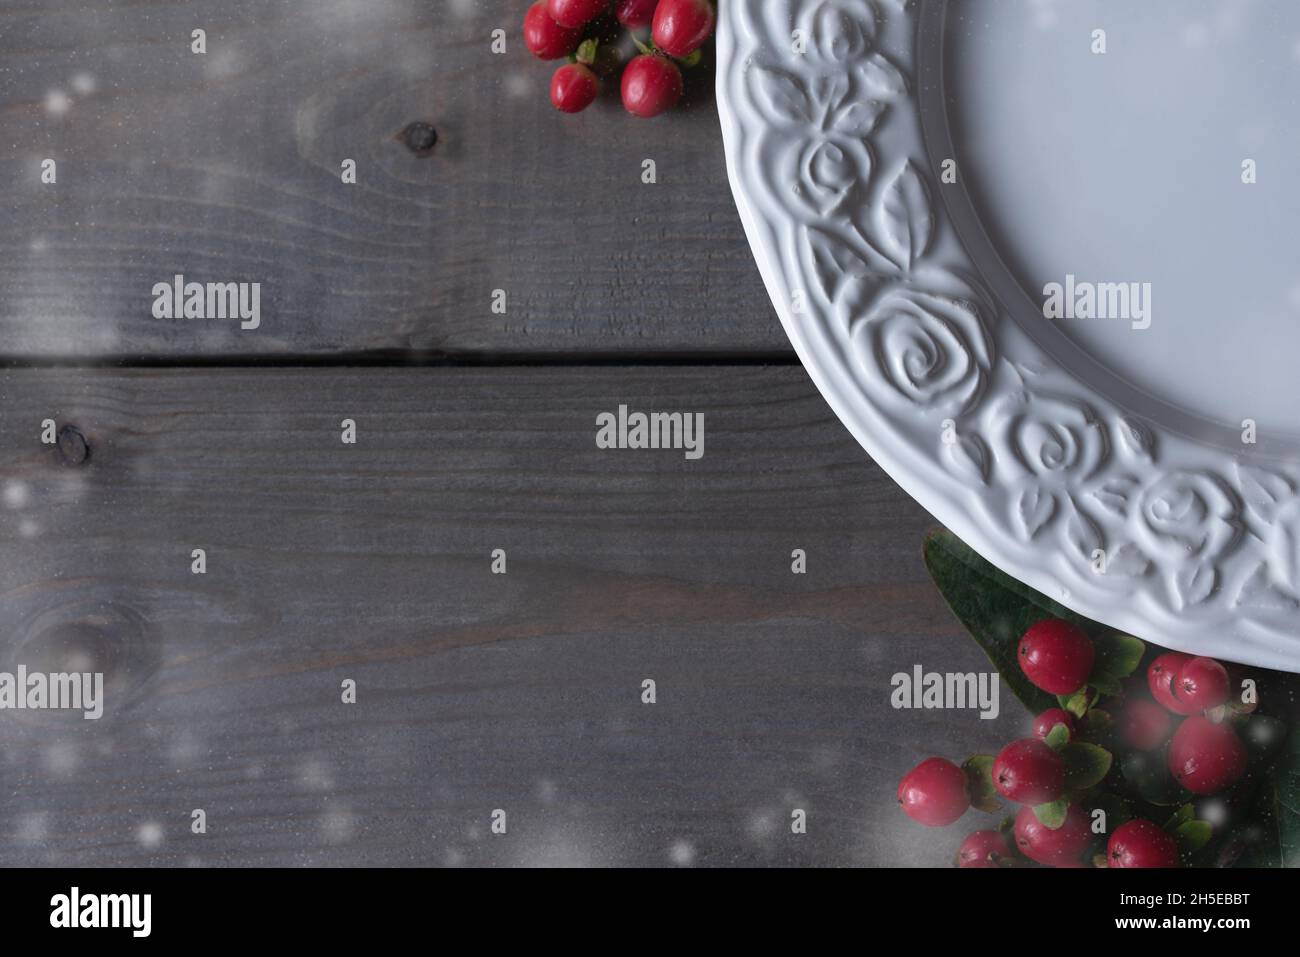 Piatto bianco per dolce dessert invernale decorato con fiocchi di neve e bacche rosse. Foto Stock